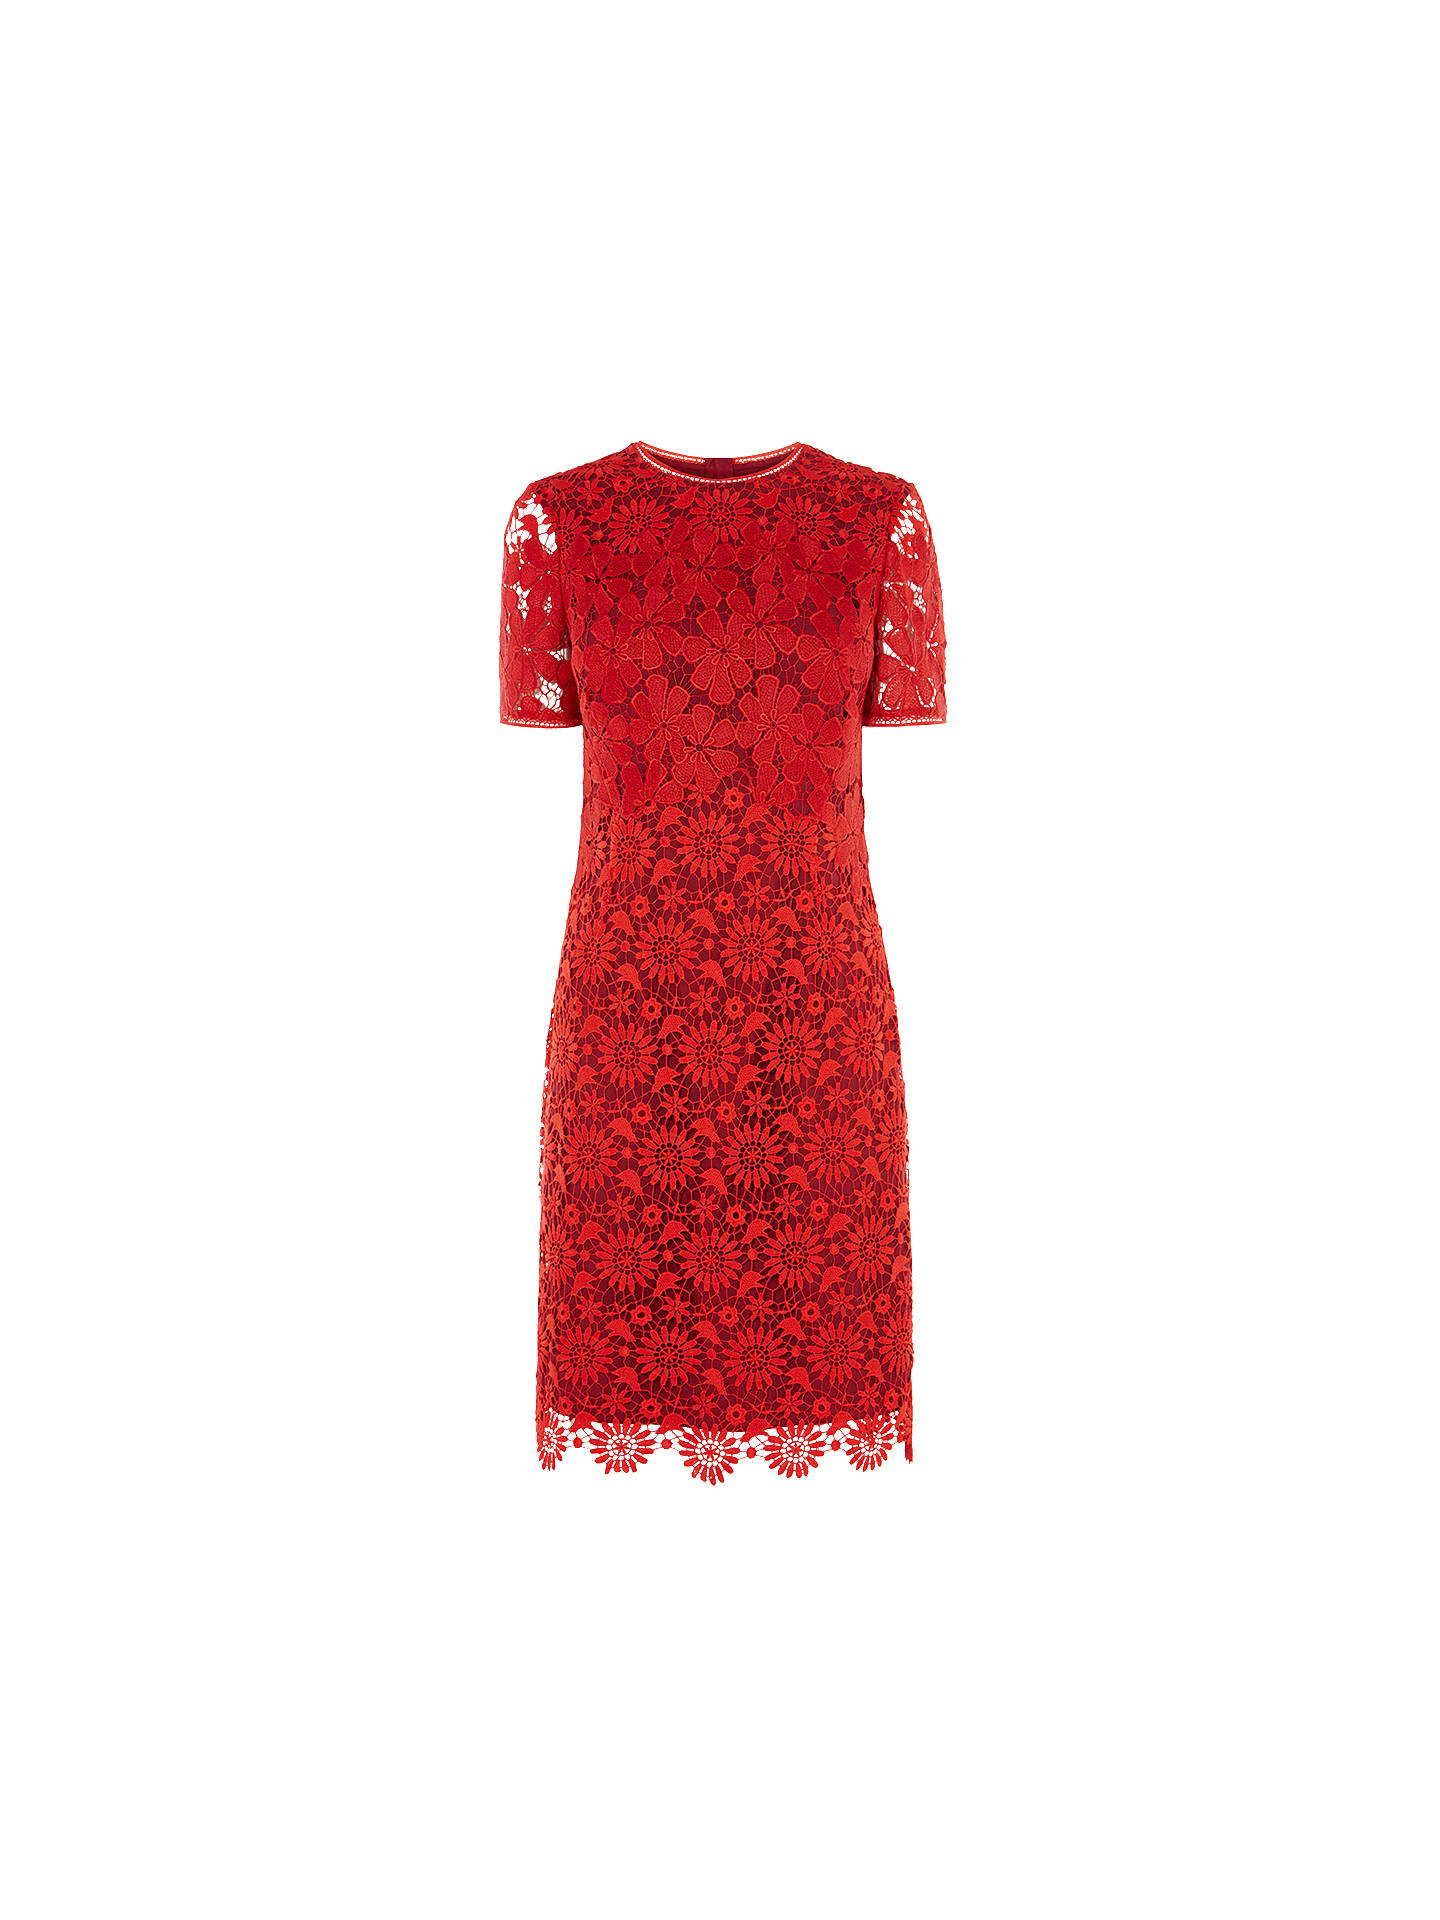 Karen Millen Blocked Lace Pencil Dress, Red/Multi at John Lewis & Partners